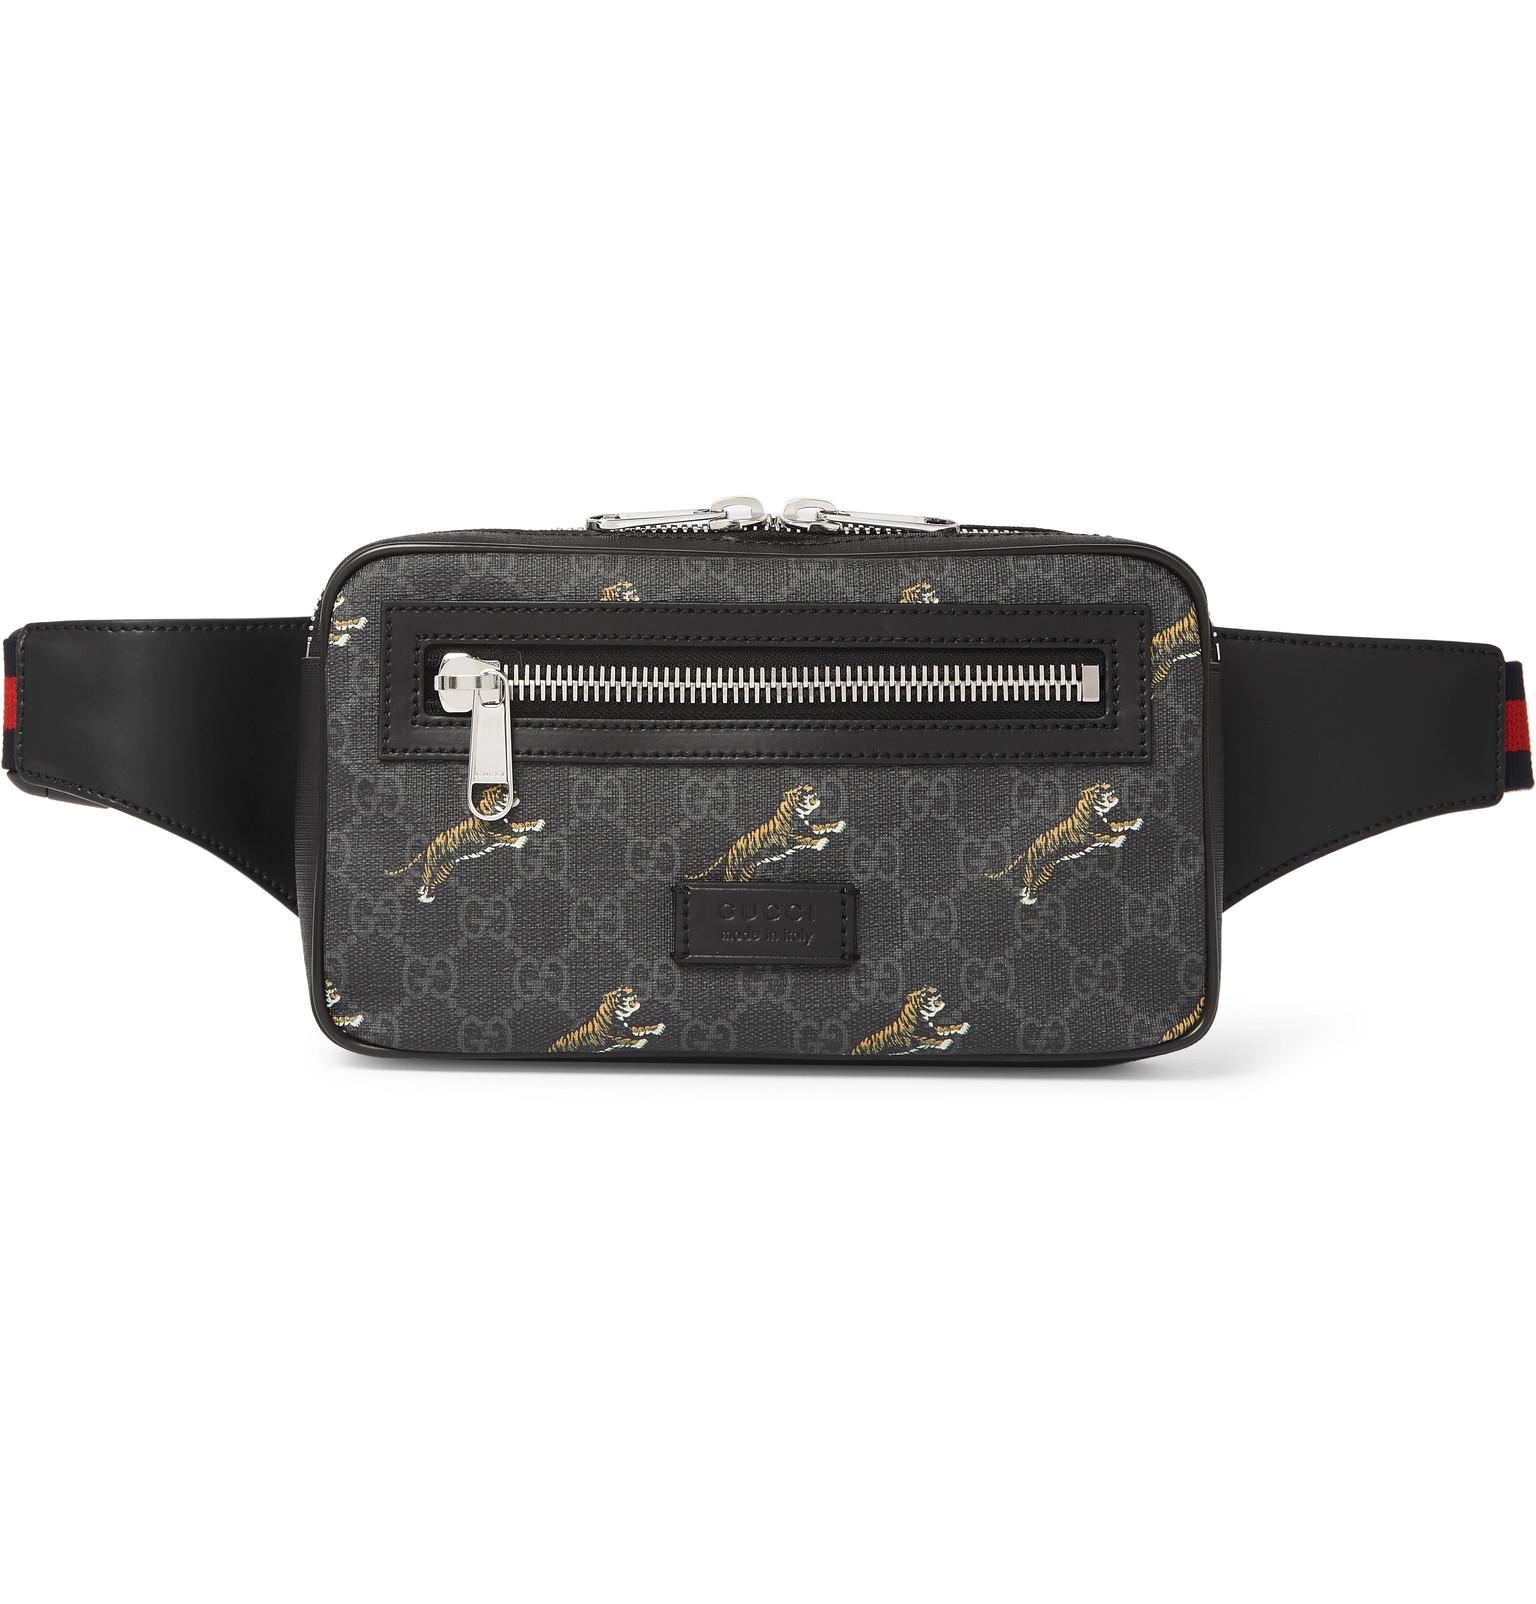 Gucci Leather-trimmed Monogrammed Coated-canvas Belt Bag in Black for Men - Lyst